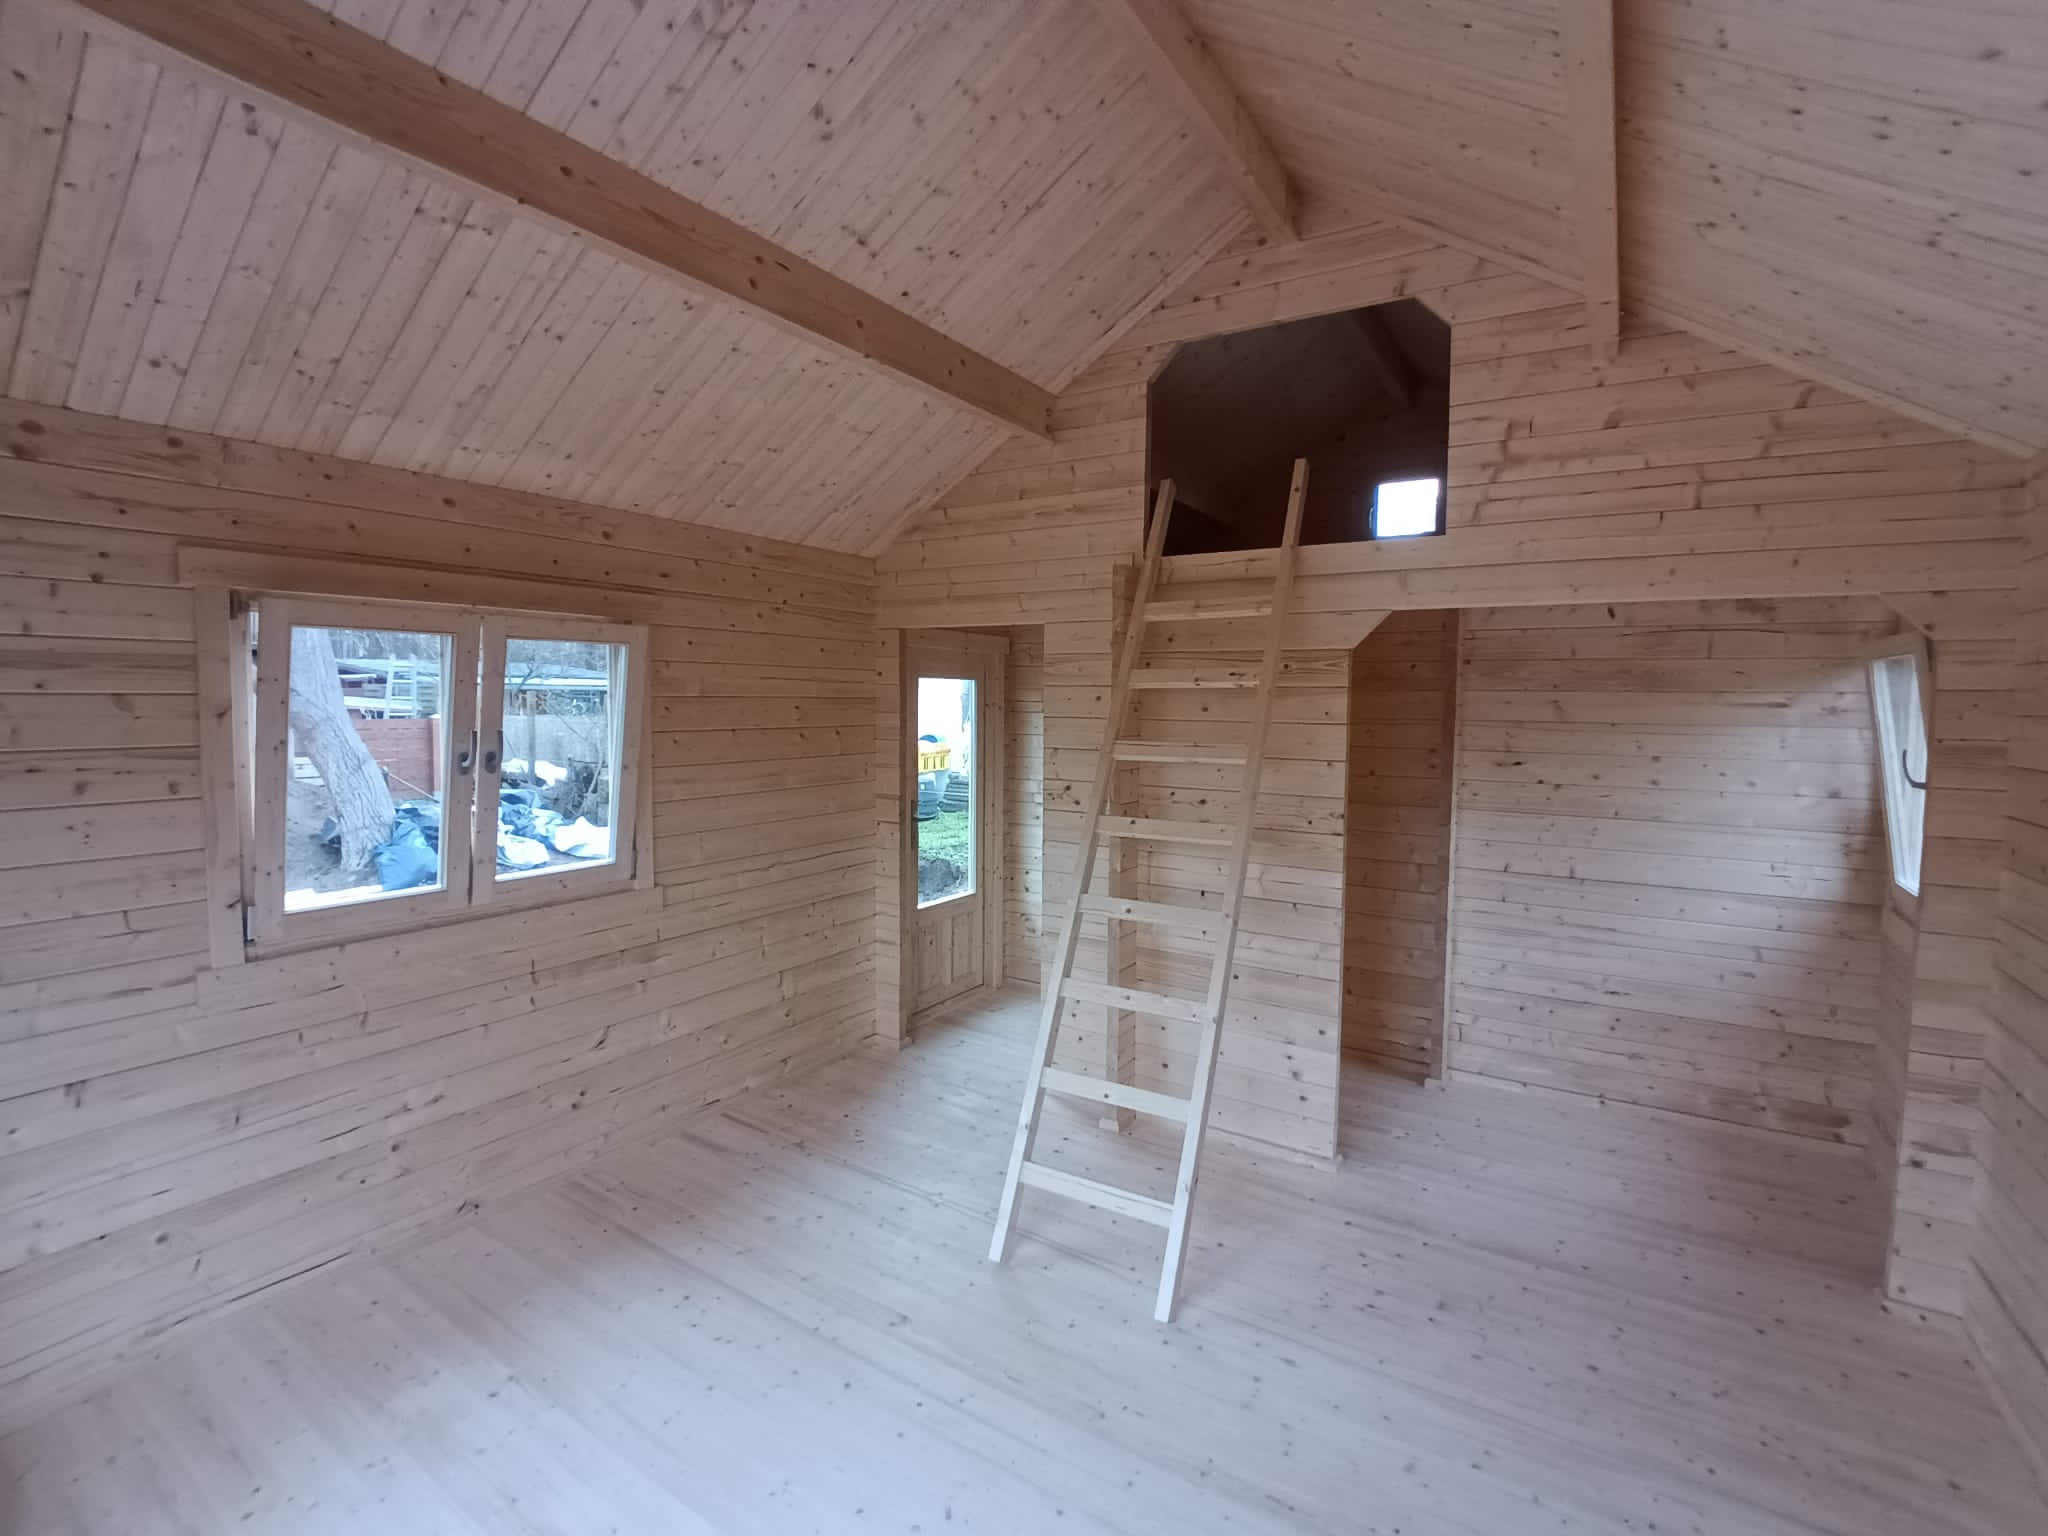 Interieur van een kleine, ongemeubileerde houten hut met zichtbare balken, grote ramen en een zolder bereikbaar via een ladder. de ruimte is leeg en helder, met natuurlijk licht dat naar binnen filtert.